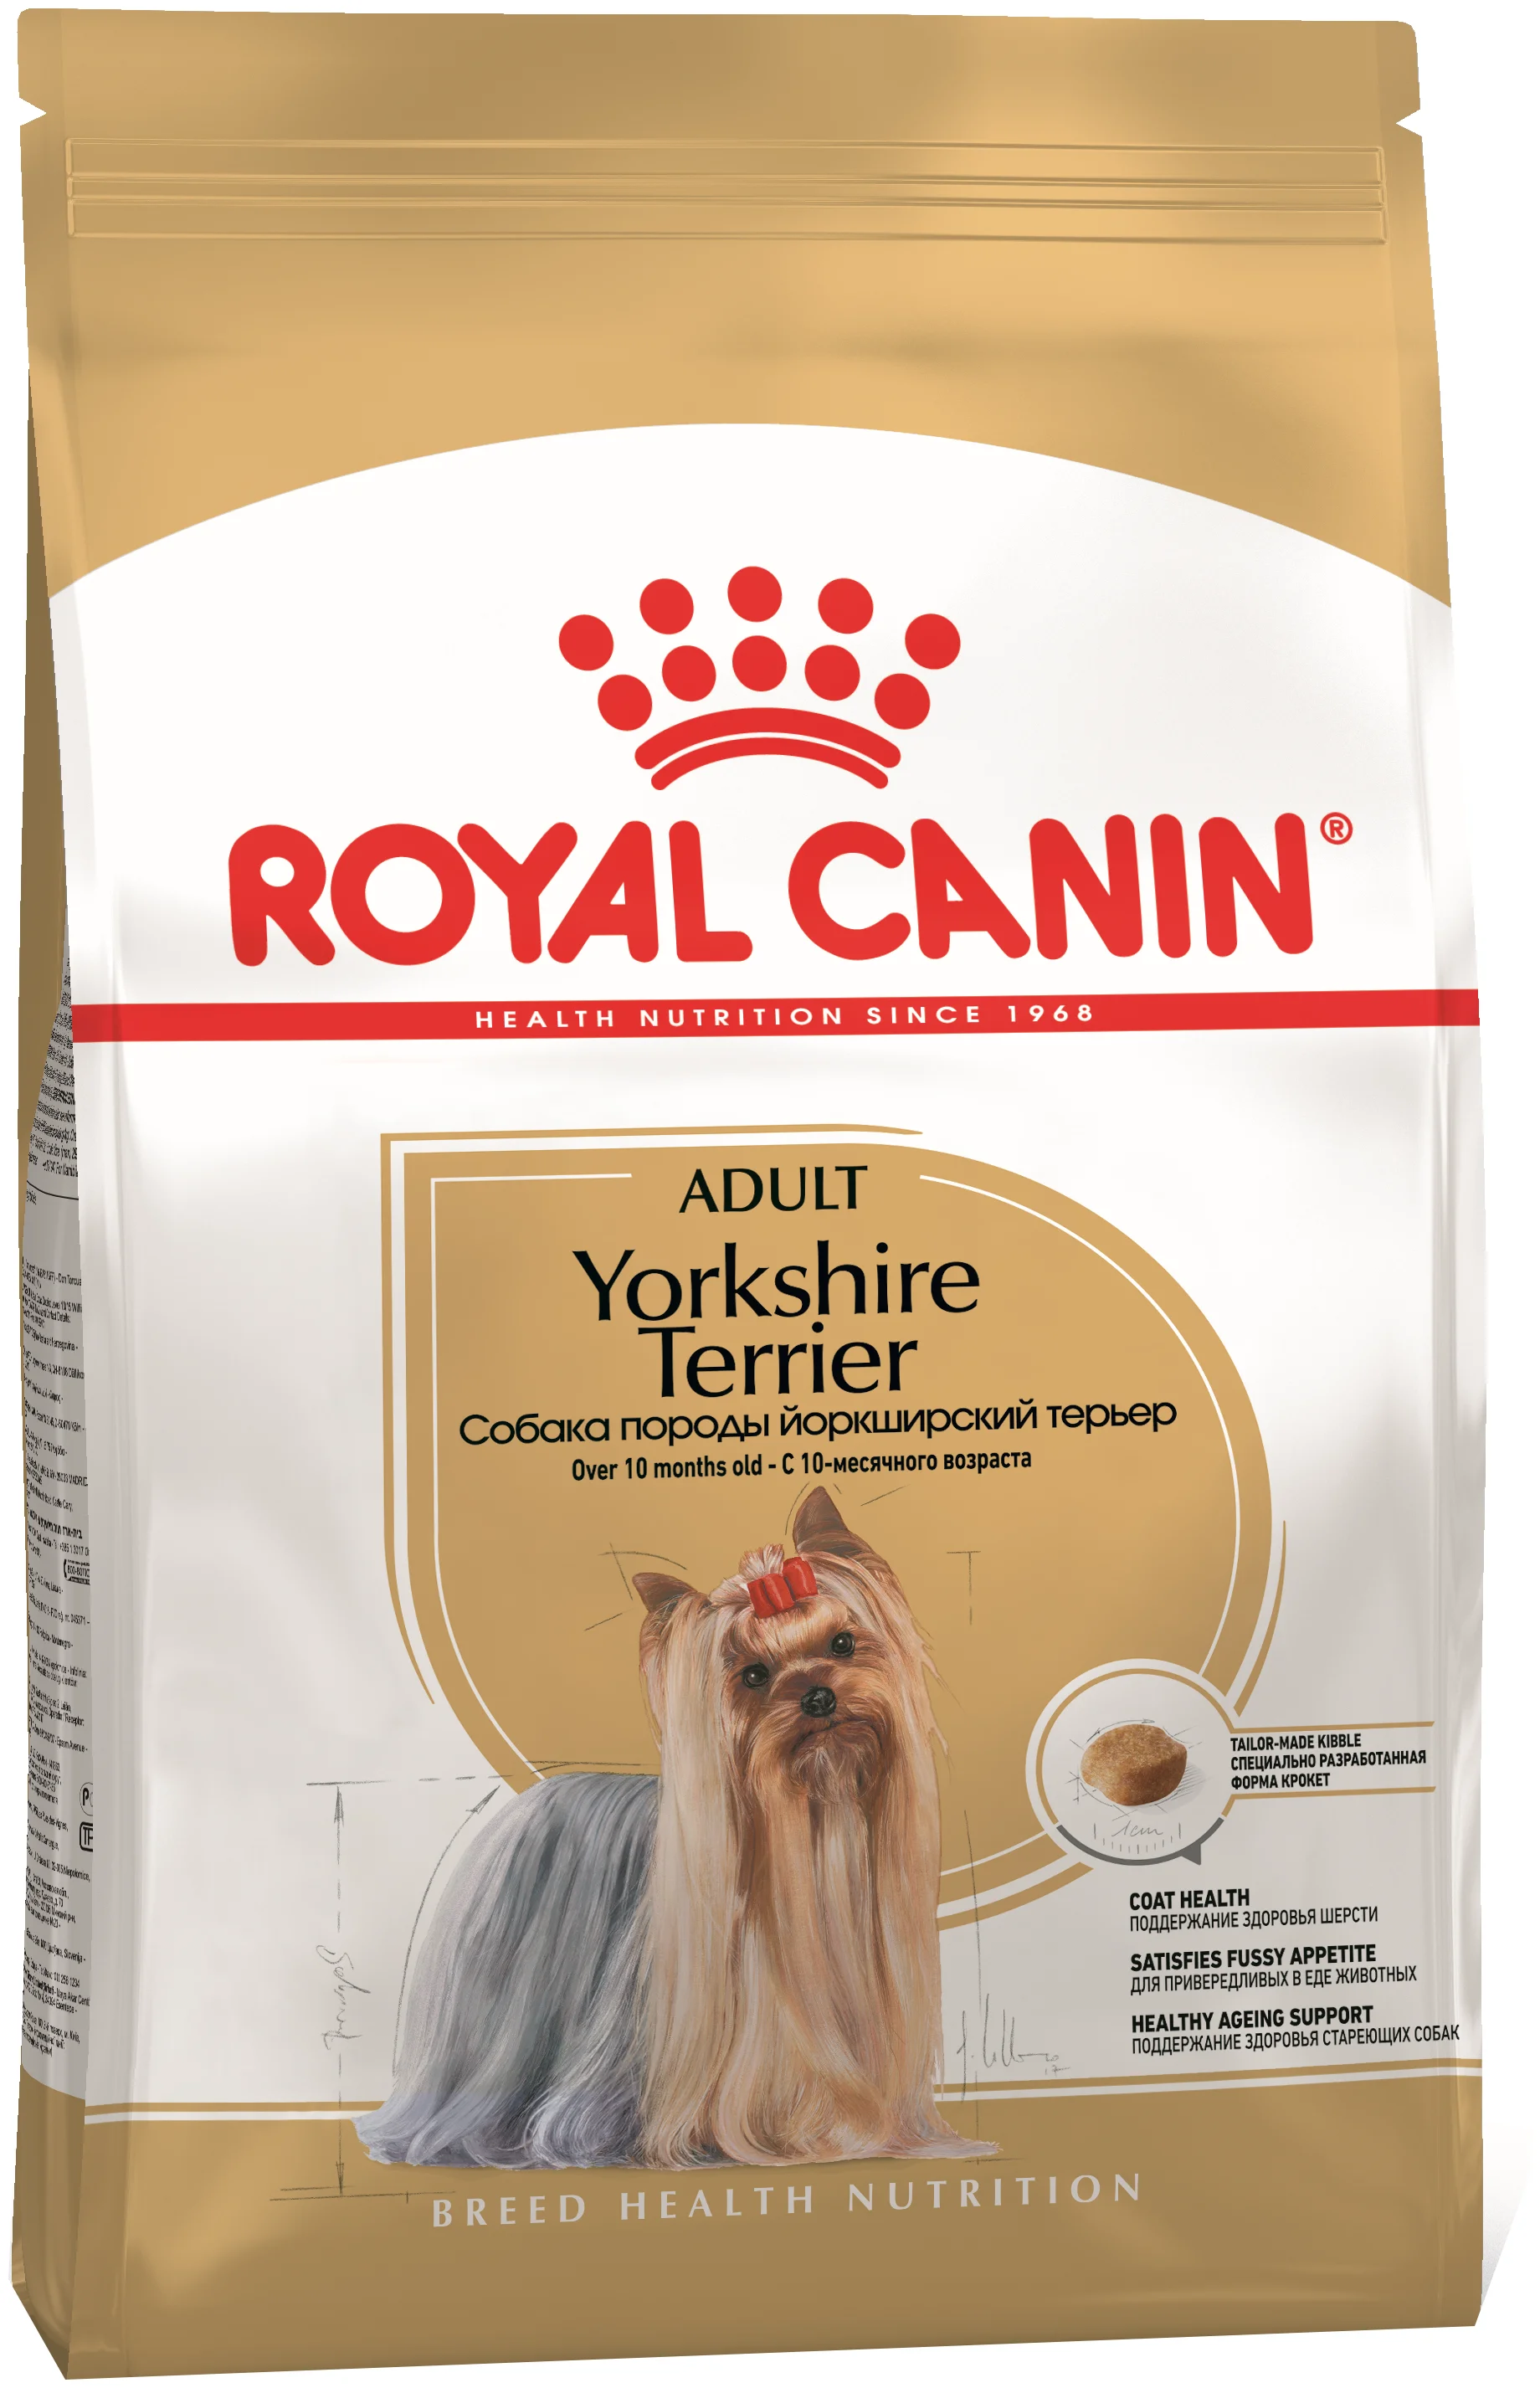 Royal Canin - возраст животного: взрослые (1-6 лет), щенки (до 1 года), пожилые (7+)